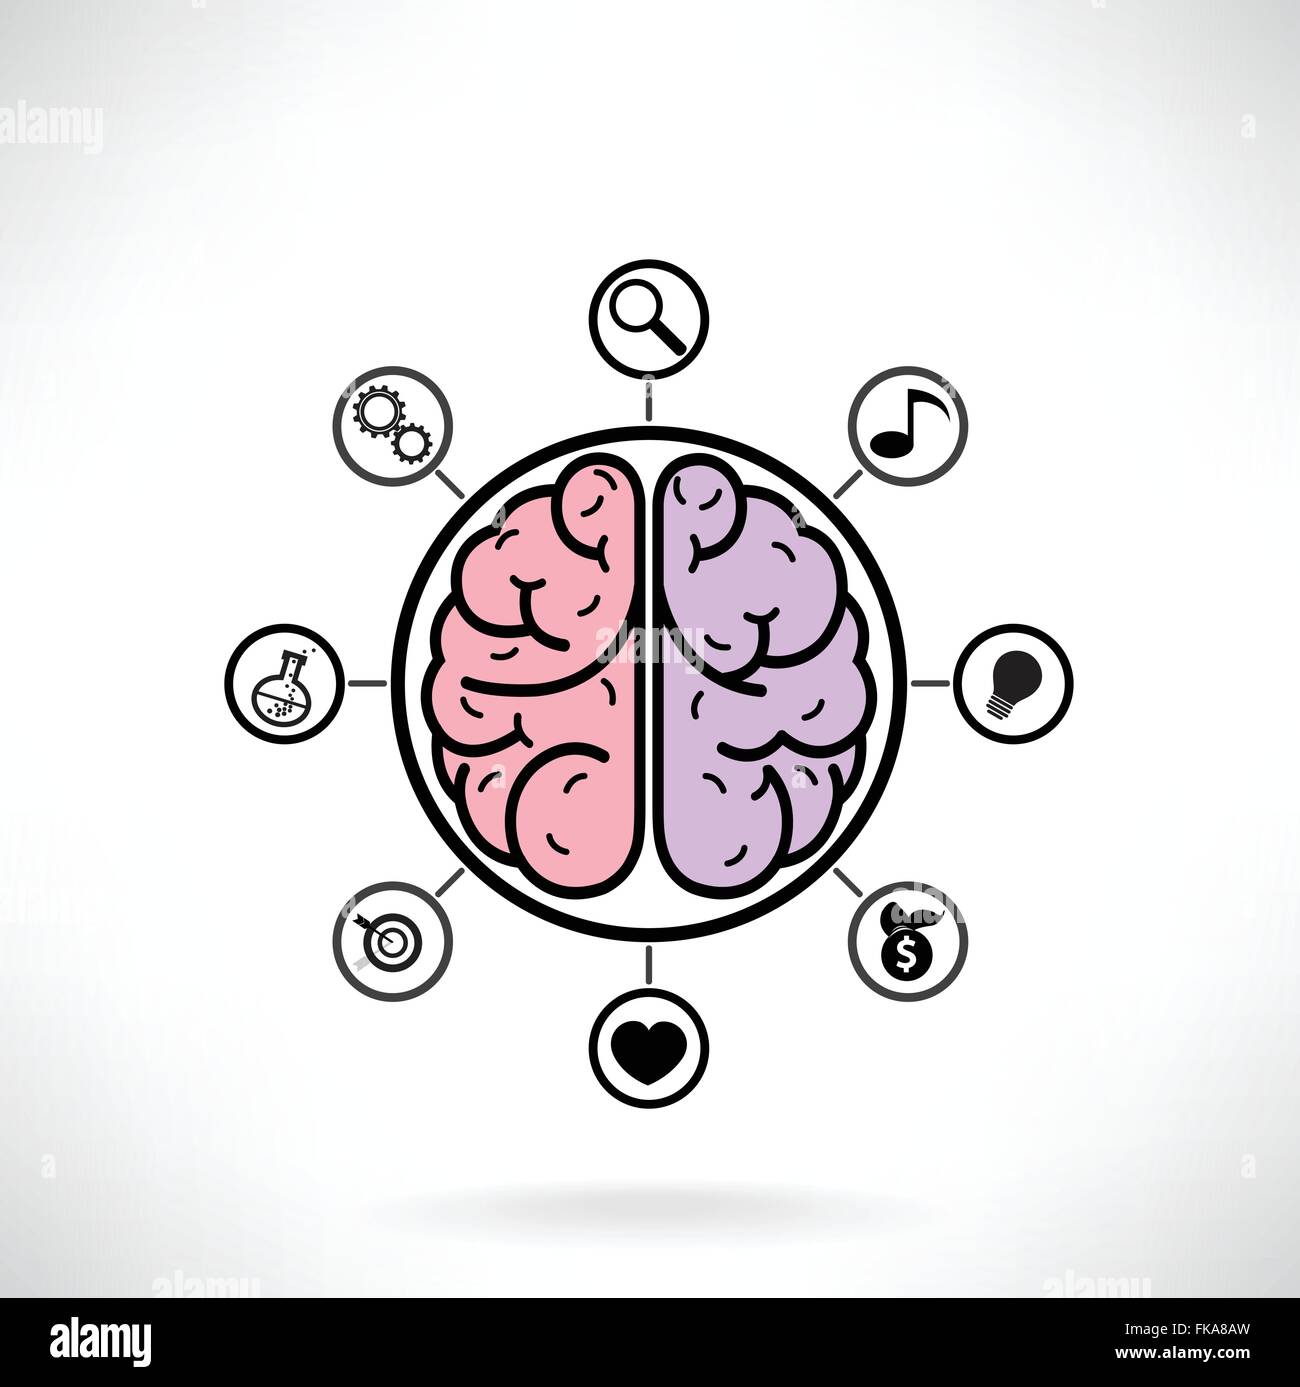 Concetto di funzione cerebrale per l'educazione e la scienza,segno aziendale , illustrazione vettoriale Illustrazione Vettoriale